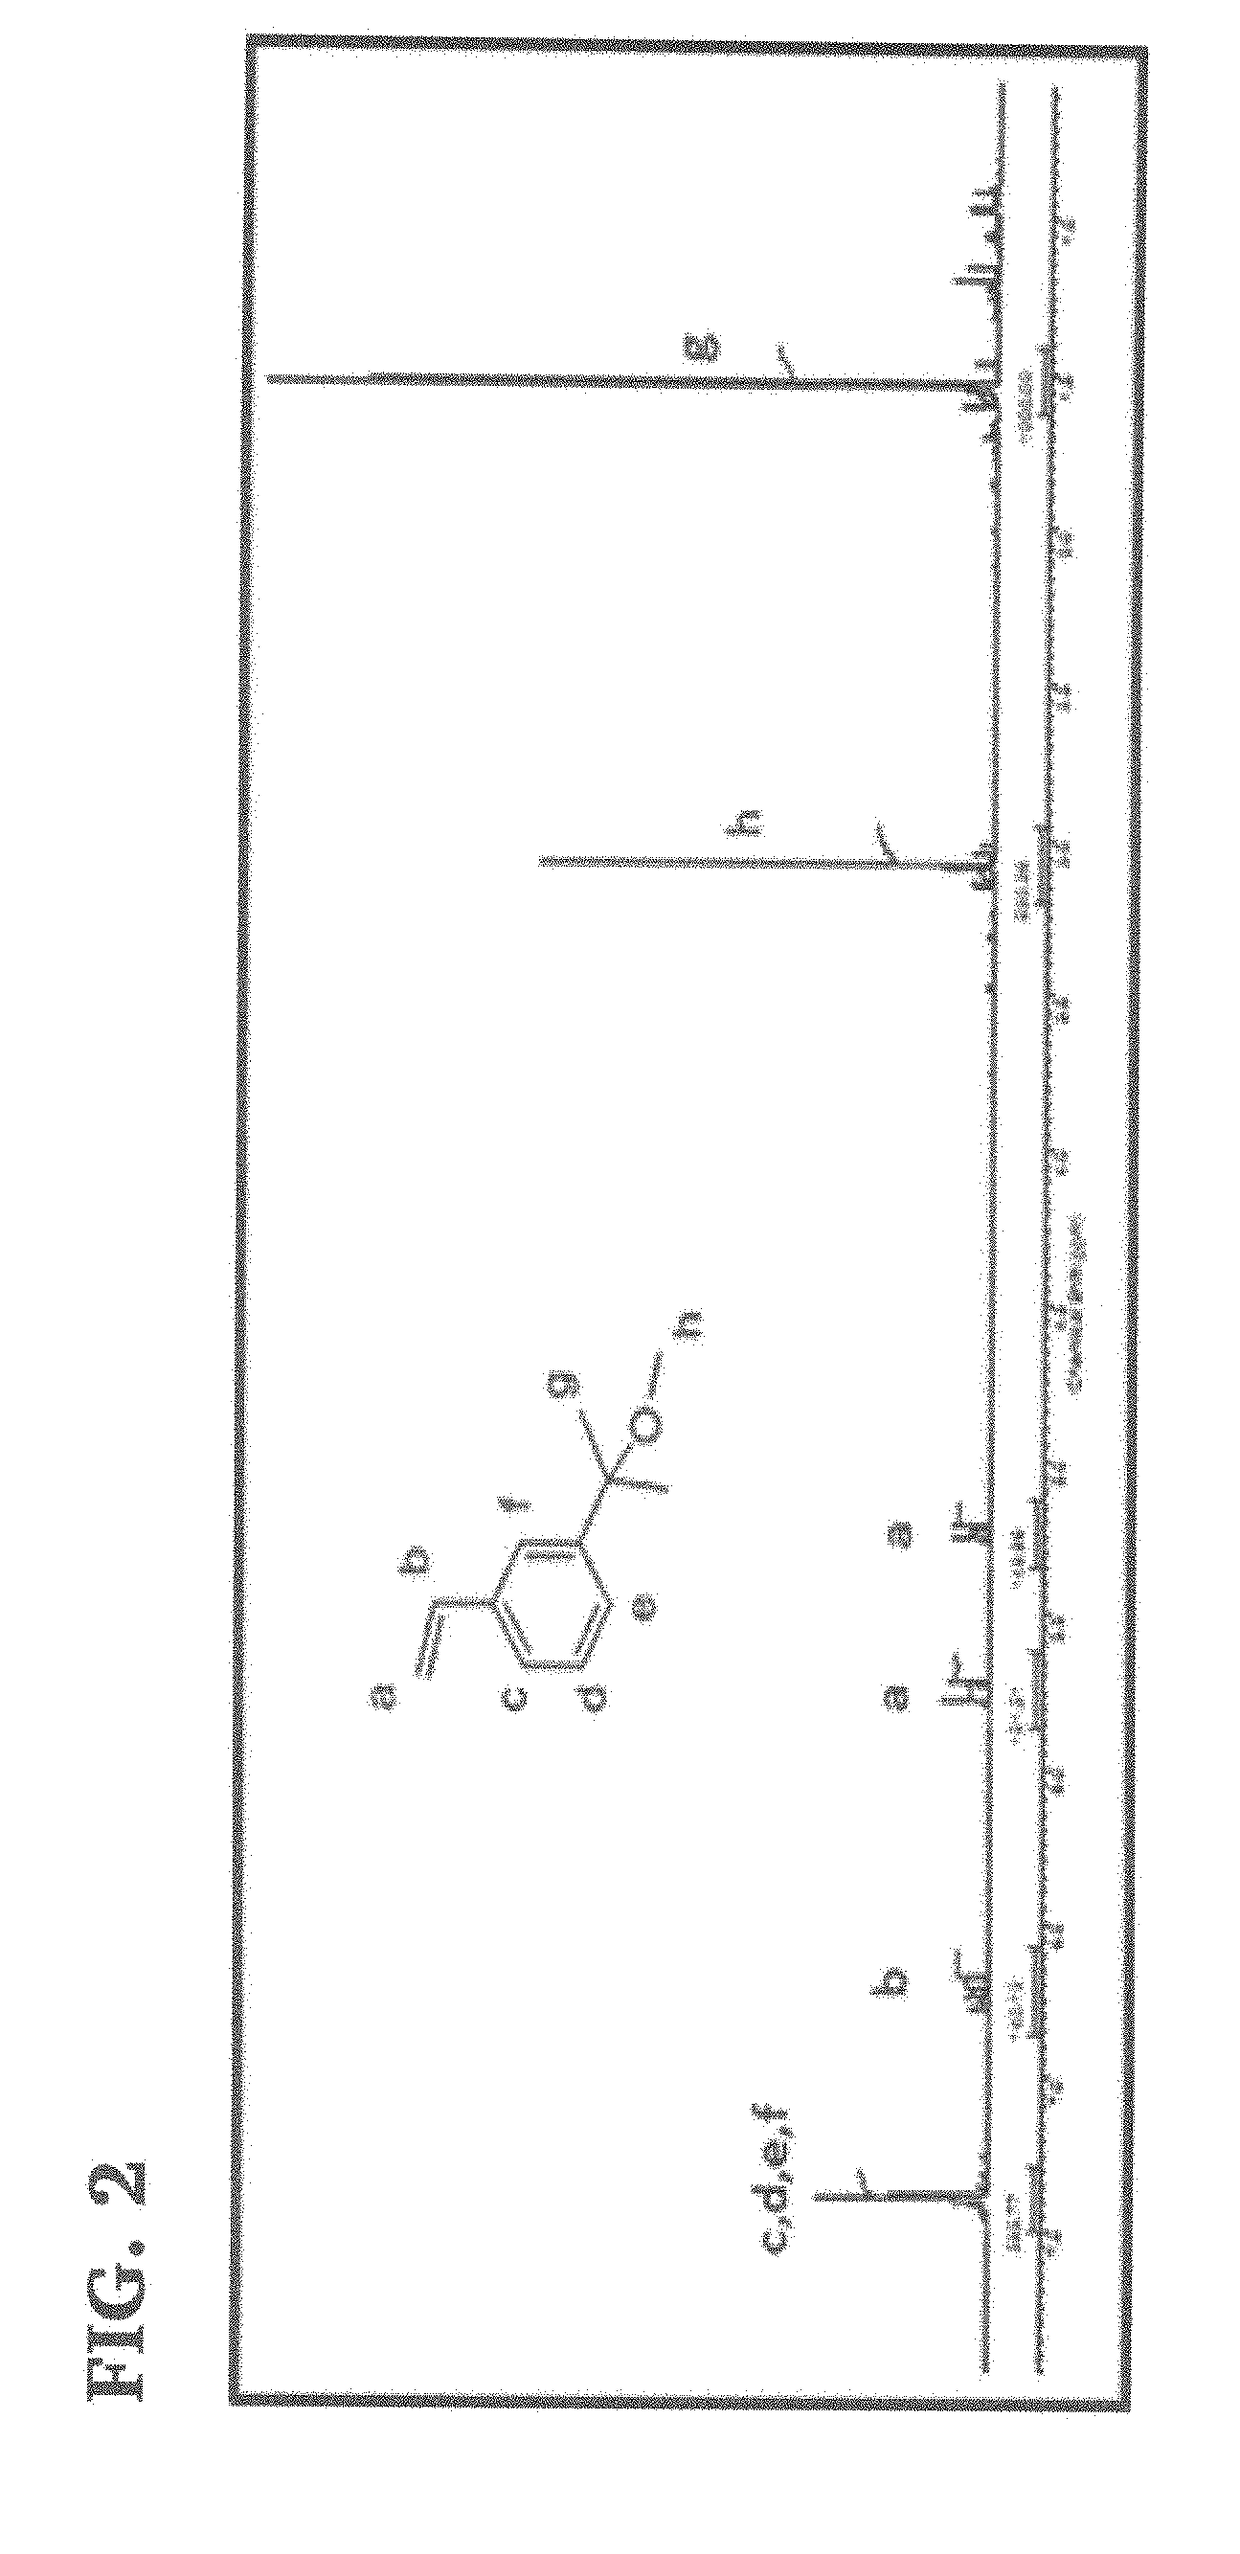 Novel polyisobutylene-based thermoplastic elastomers